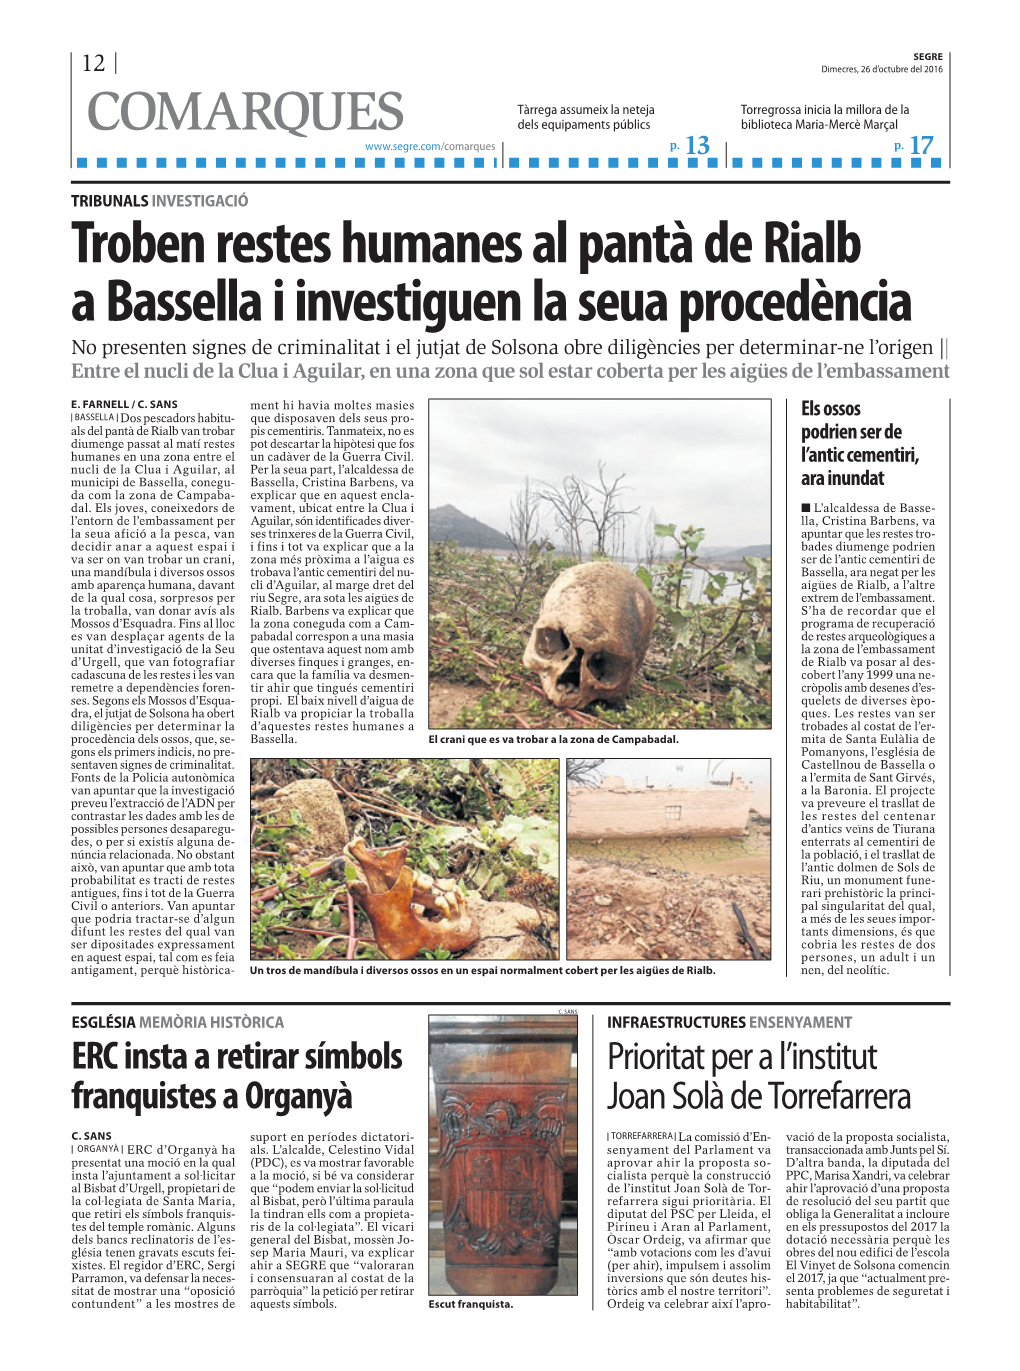 Troben Restes Humanes Al Pantà De Rialb a Bassella I Investiguen La